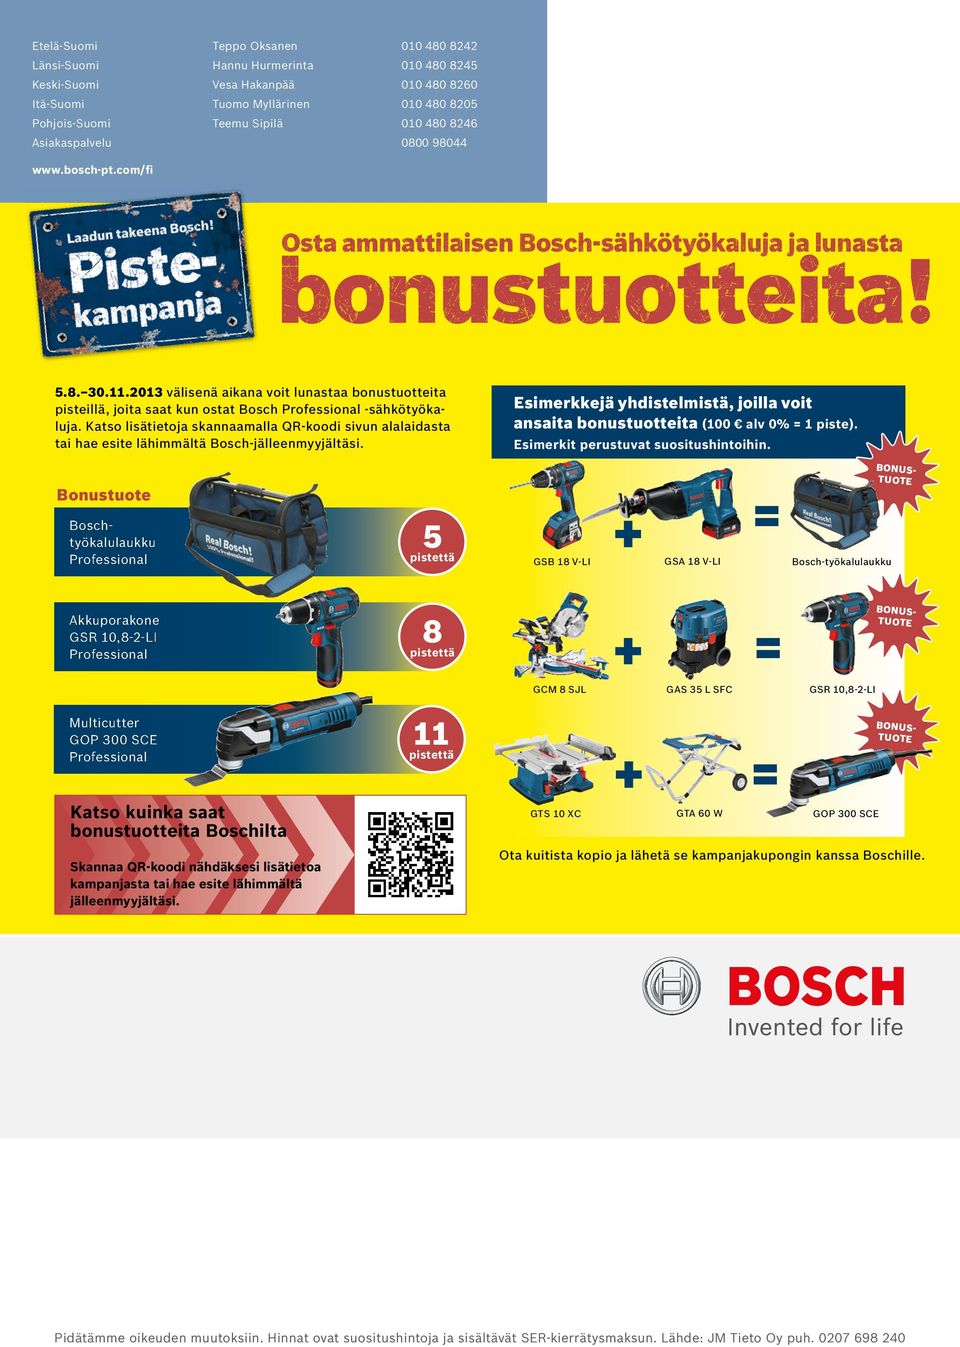 2013 välisenä aikana voit lunastaa bonustuotteita pisteillä, joita saat kun ostat Bosch -sähkötyökaluja.